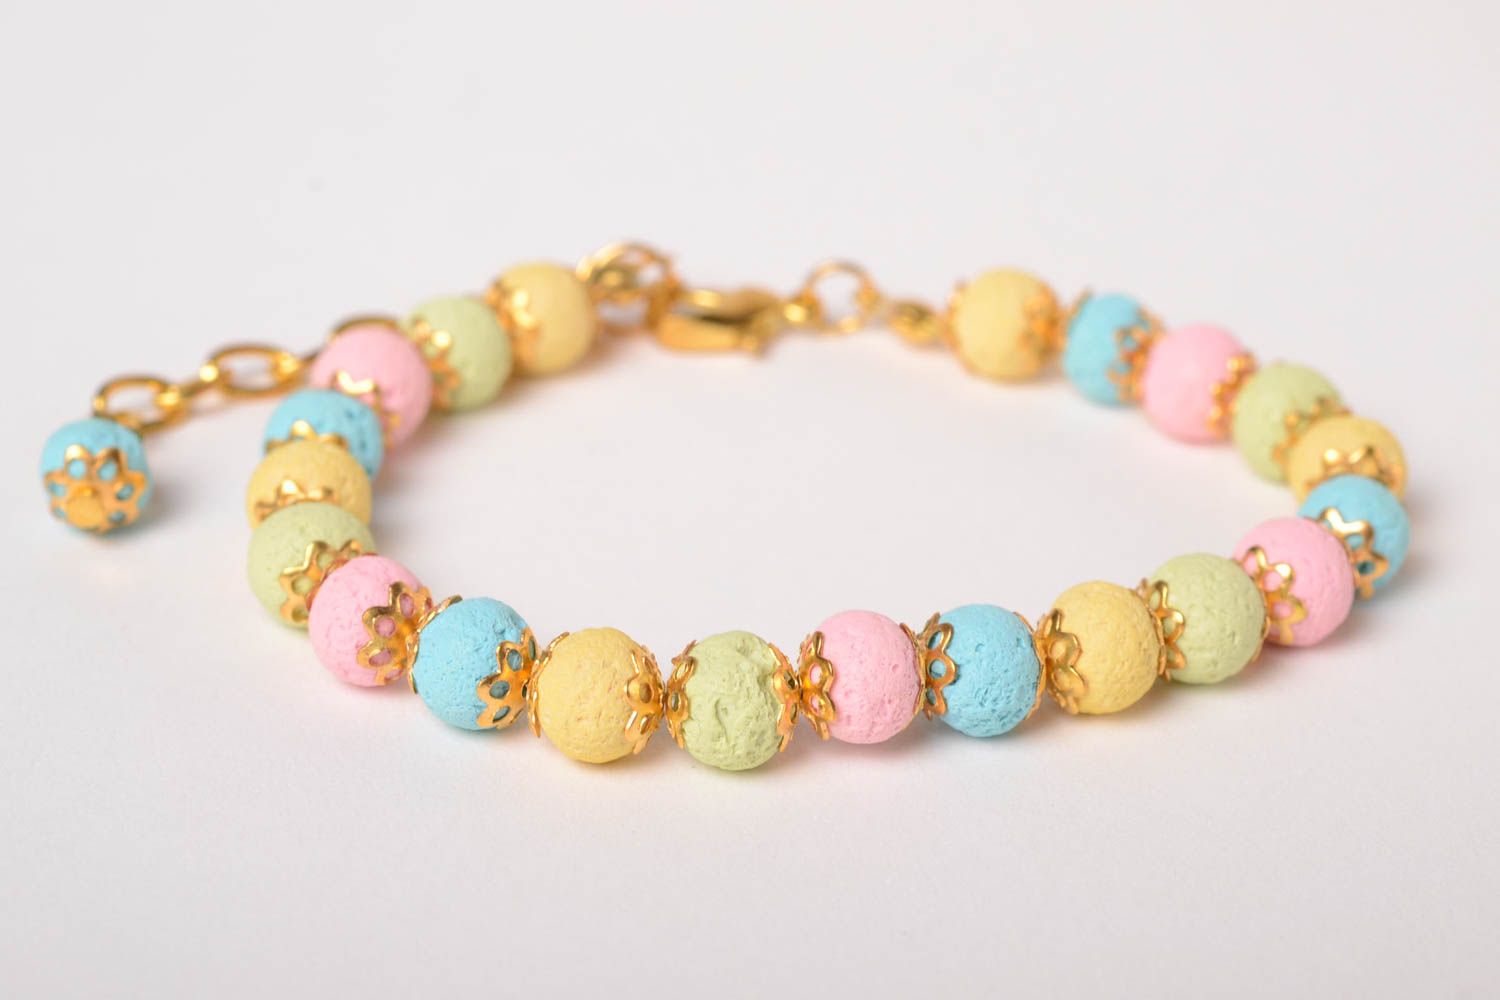 Homemade jewelry designer bracelet bead bracelets for women gifts for girls photo 1